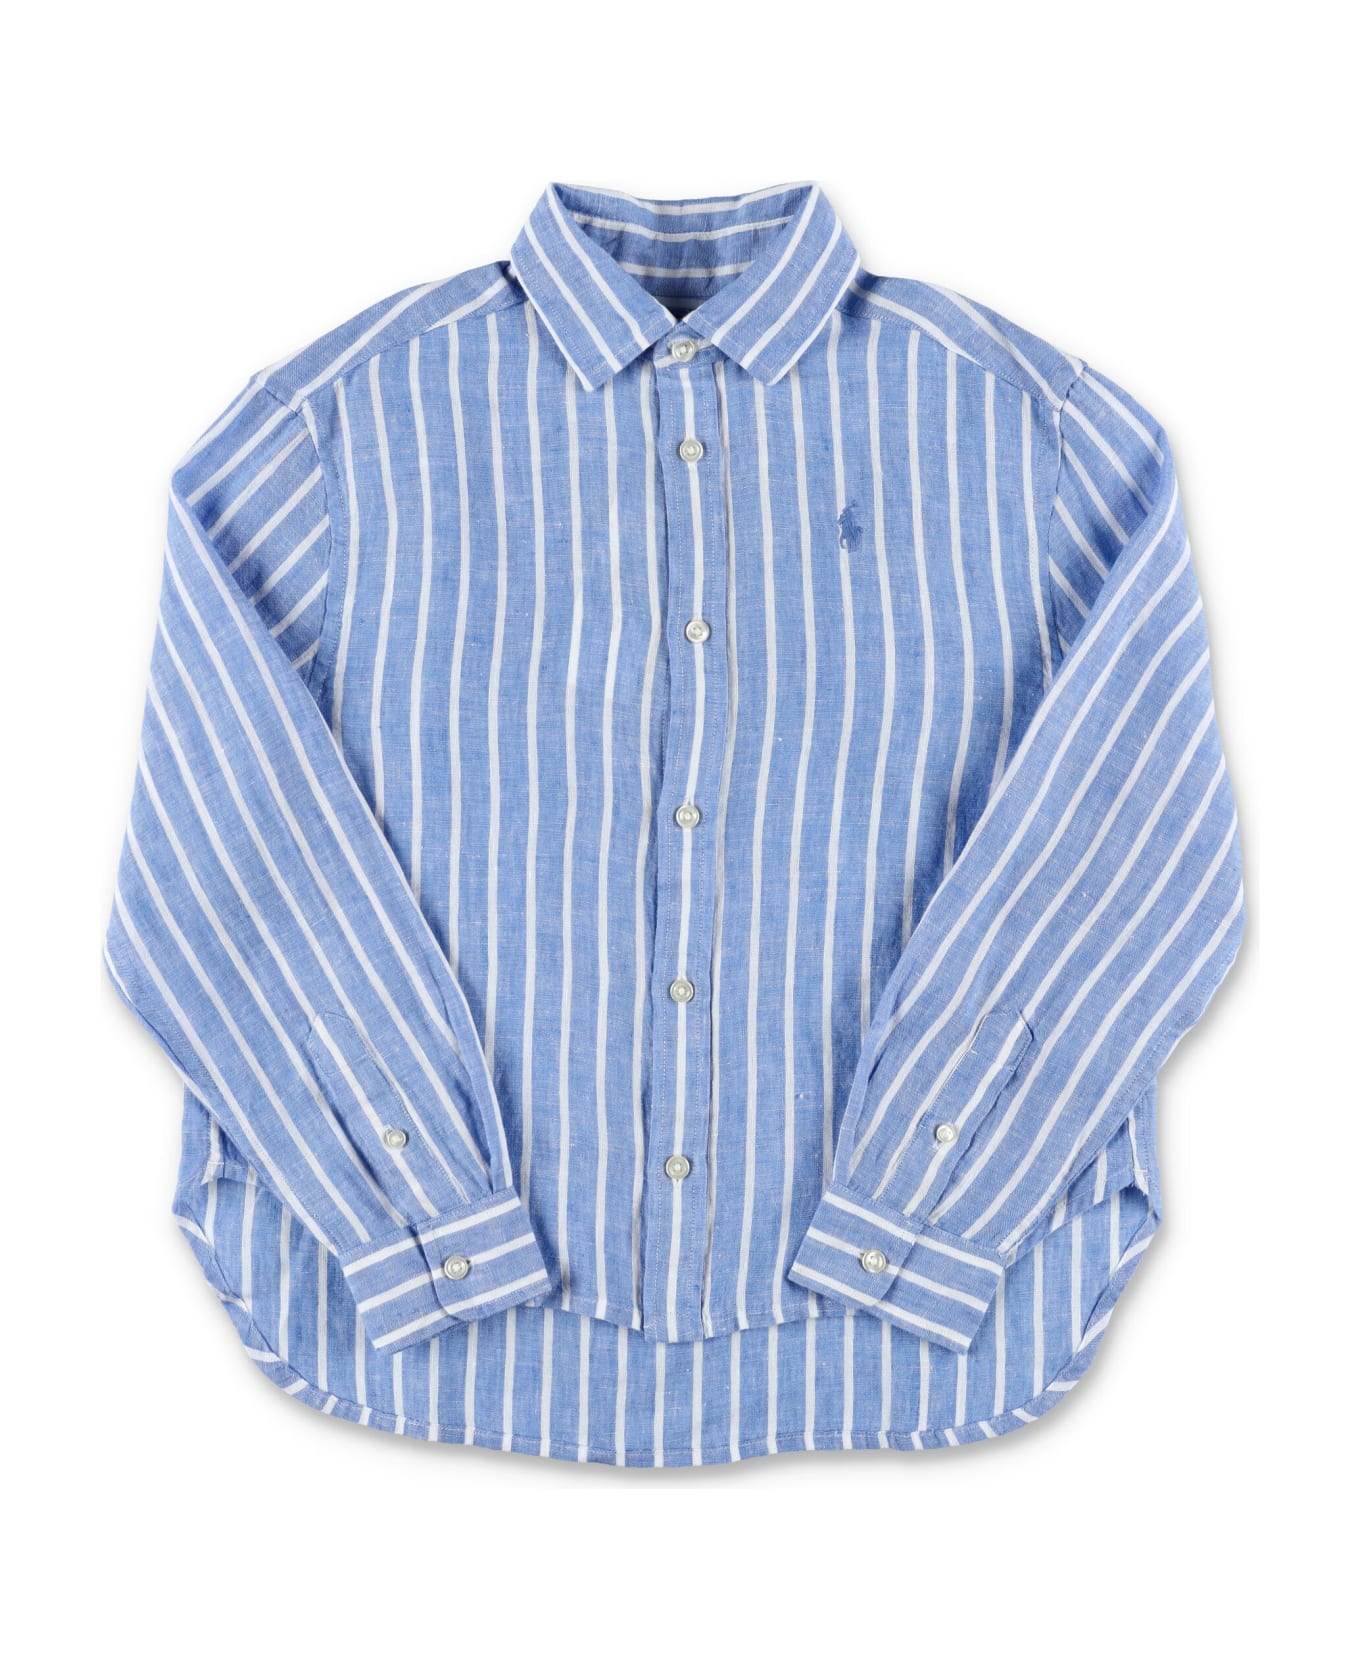 Polo Ralph Lauren Striped Linen Shirt - L.BLUE